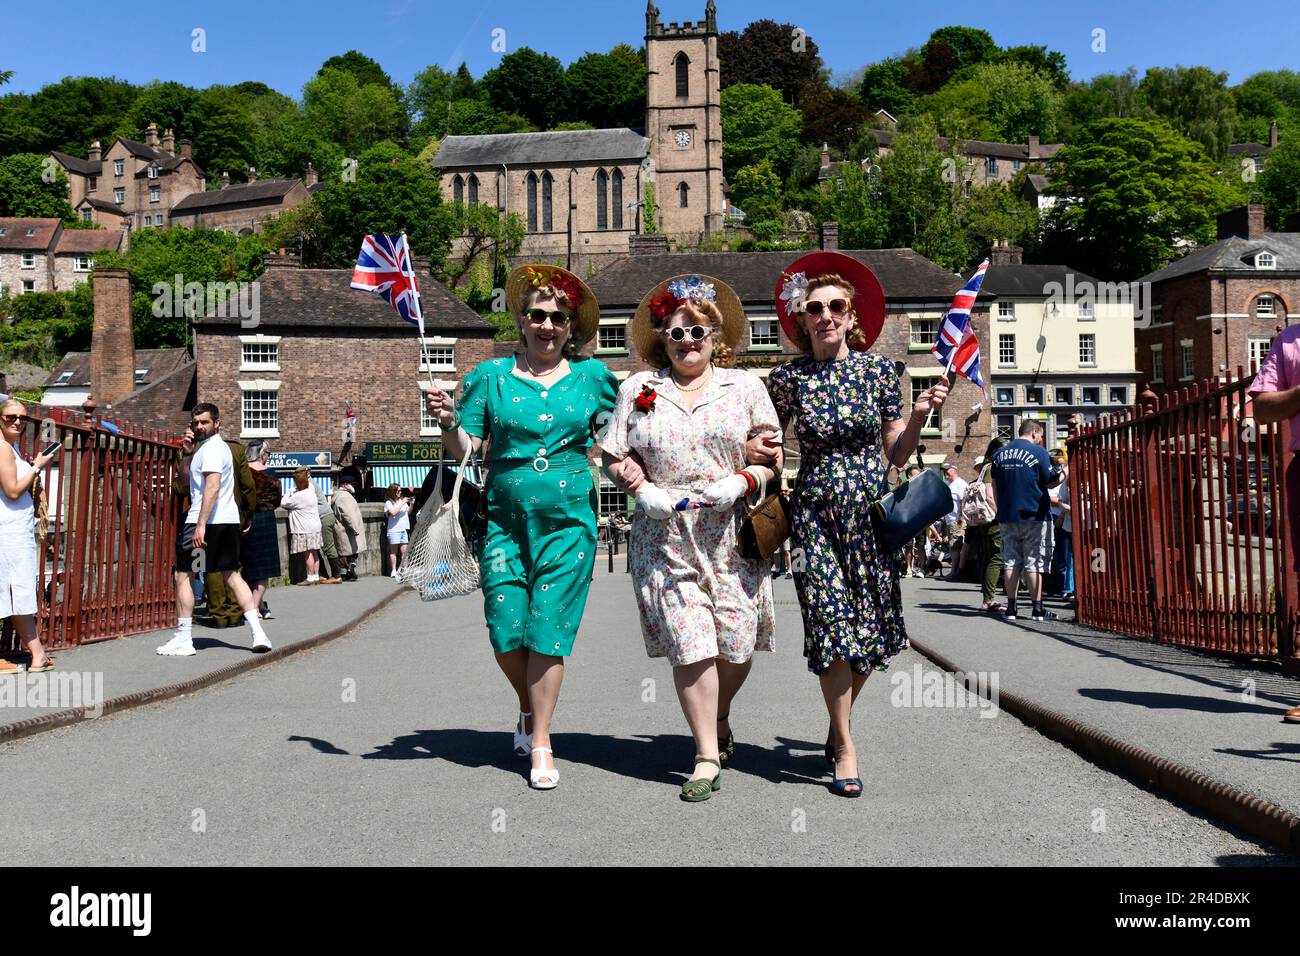 Das Ironbridge World War Two Weekend. Schwestern im Stil der 1940er Jahre, die über die weltweit erste Ironbridge spazieren. Nachstellung WW2 2. Weltkrieg Kostümkleid Damen Credit Dave Bagnall Stockfoto